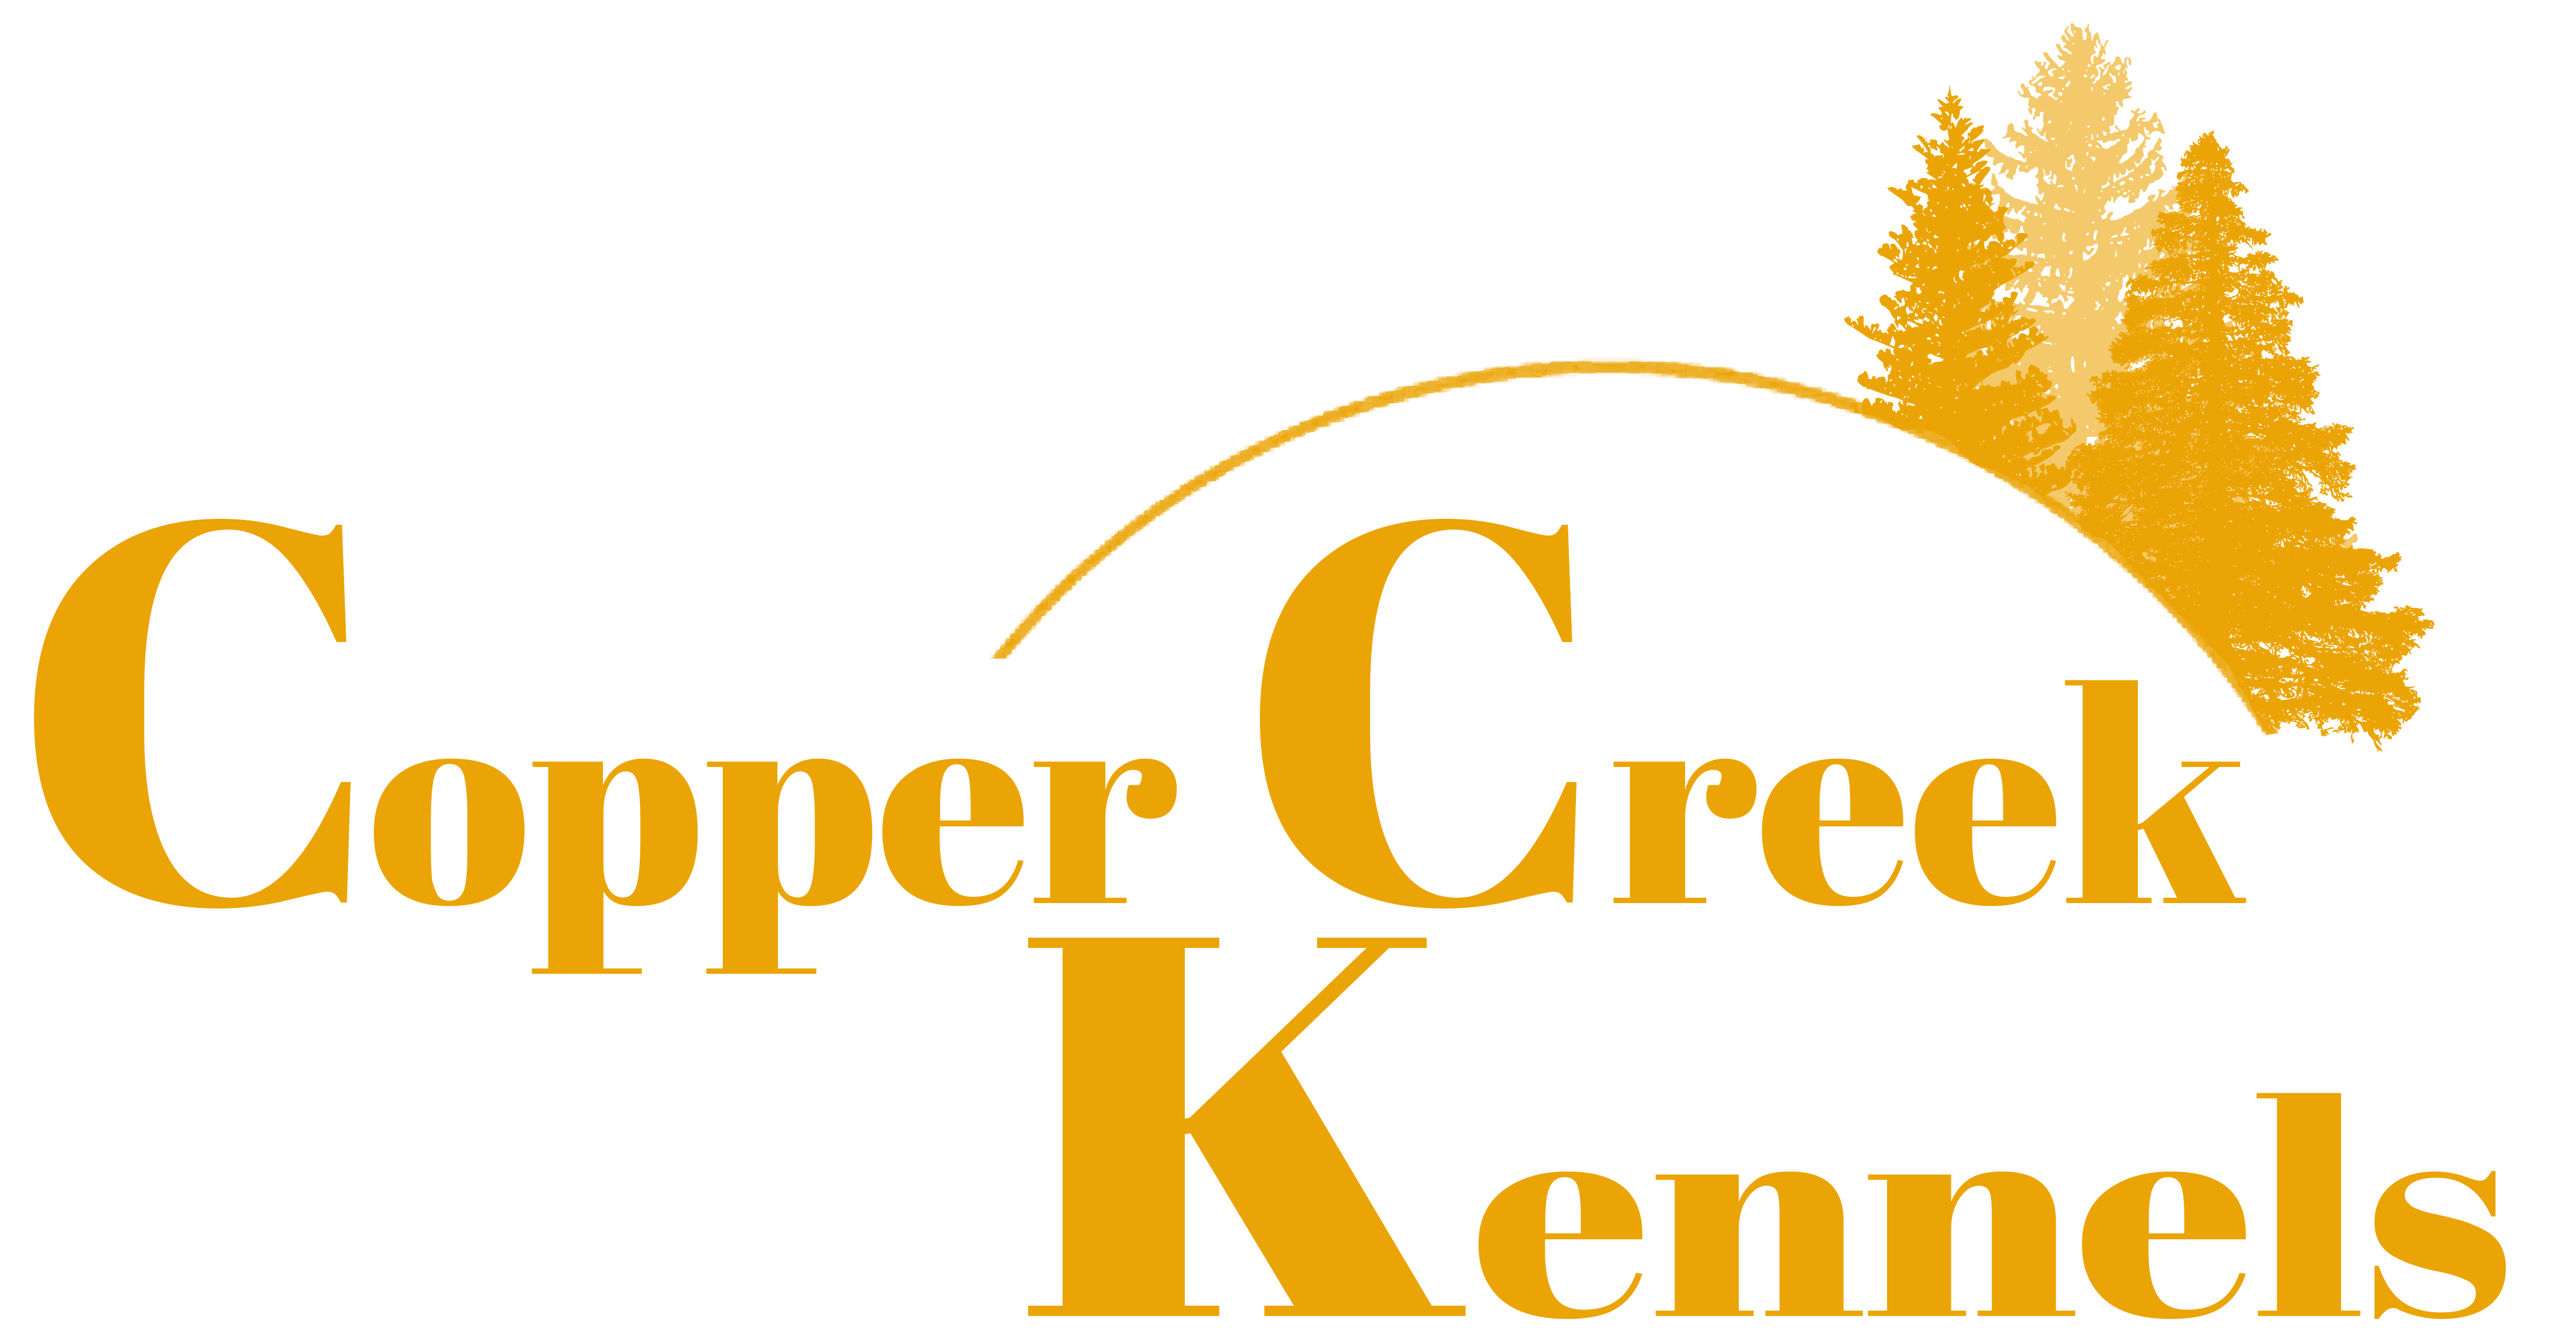 Copper Creek Kennels